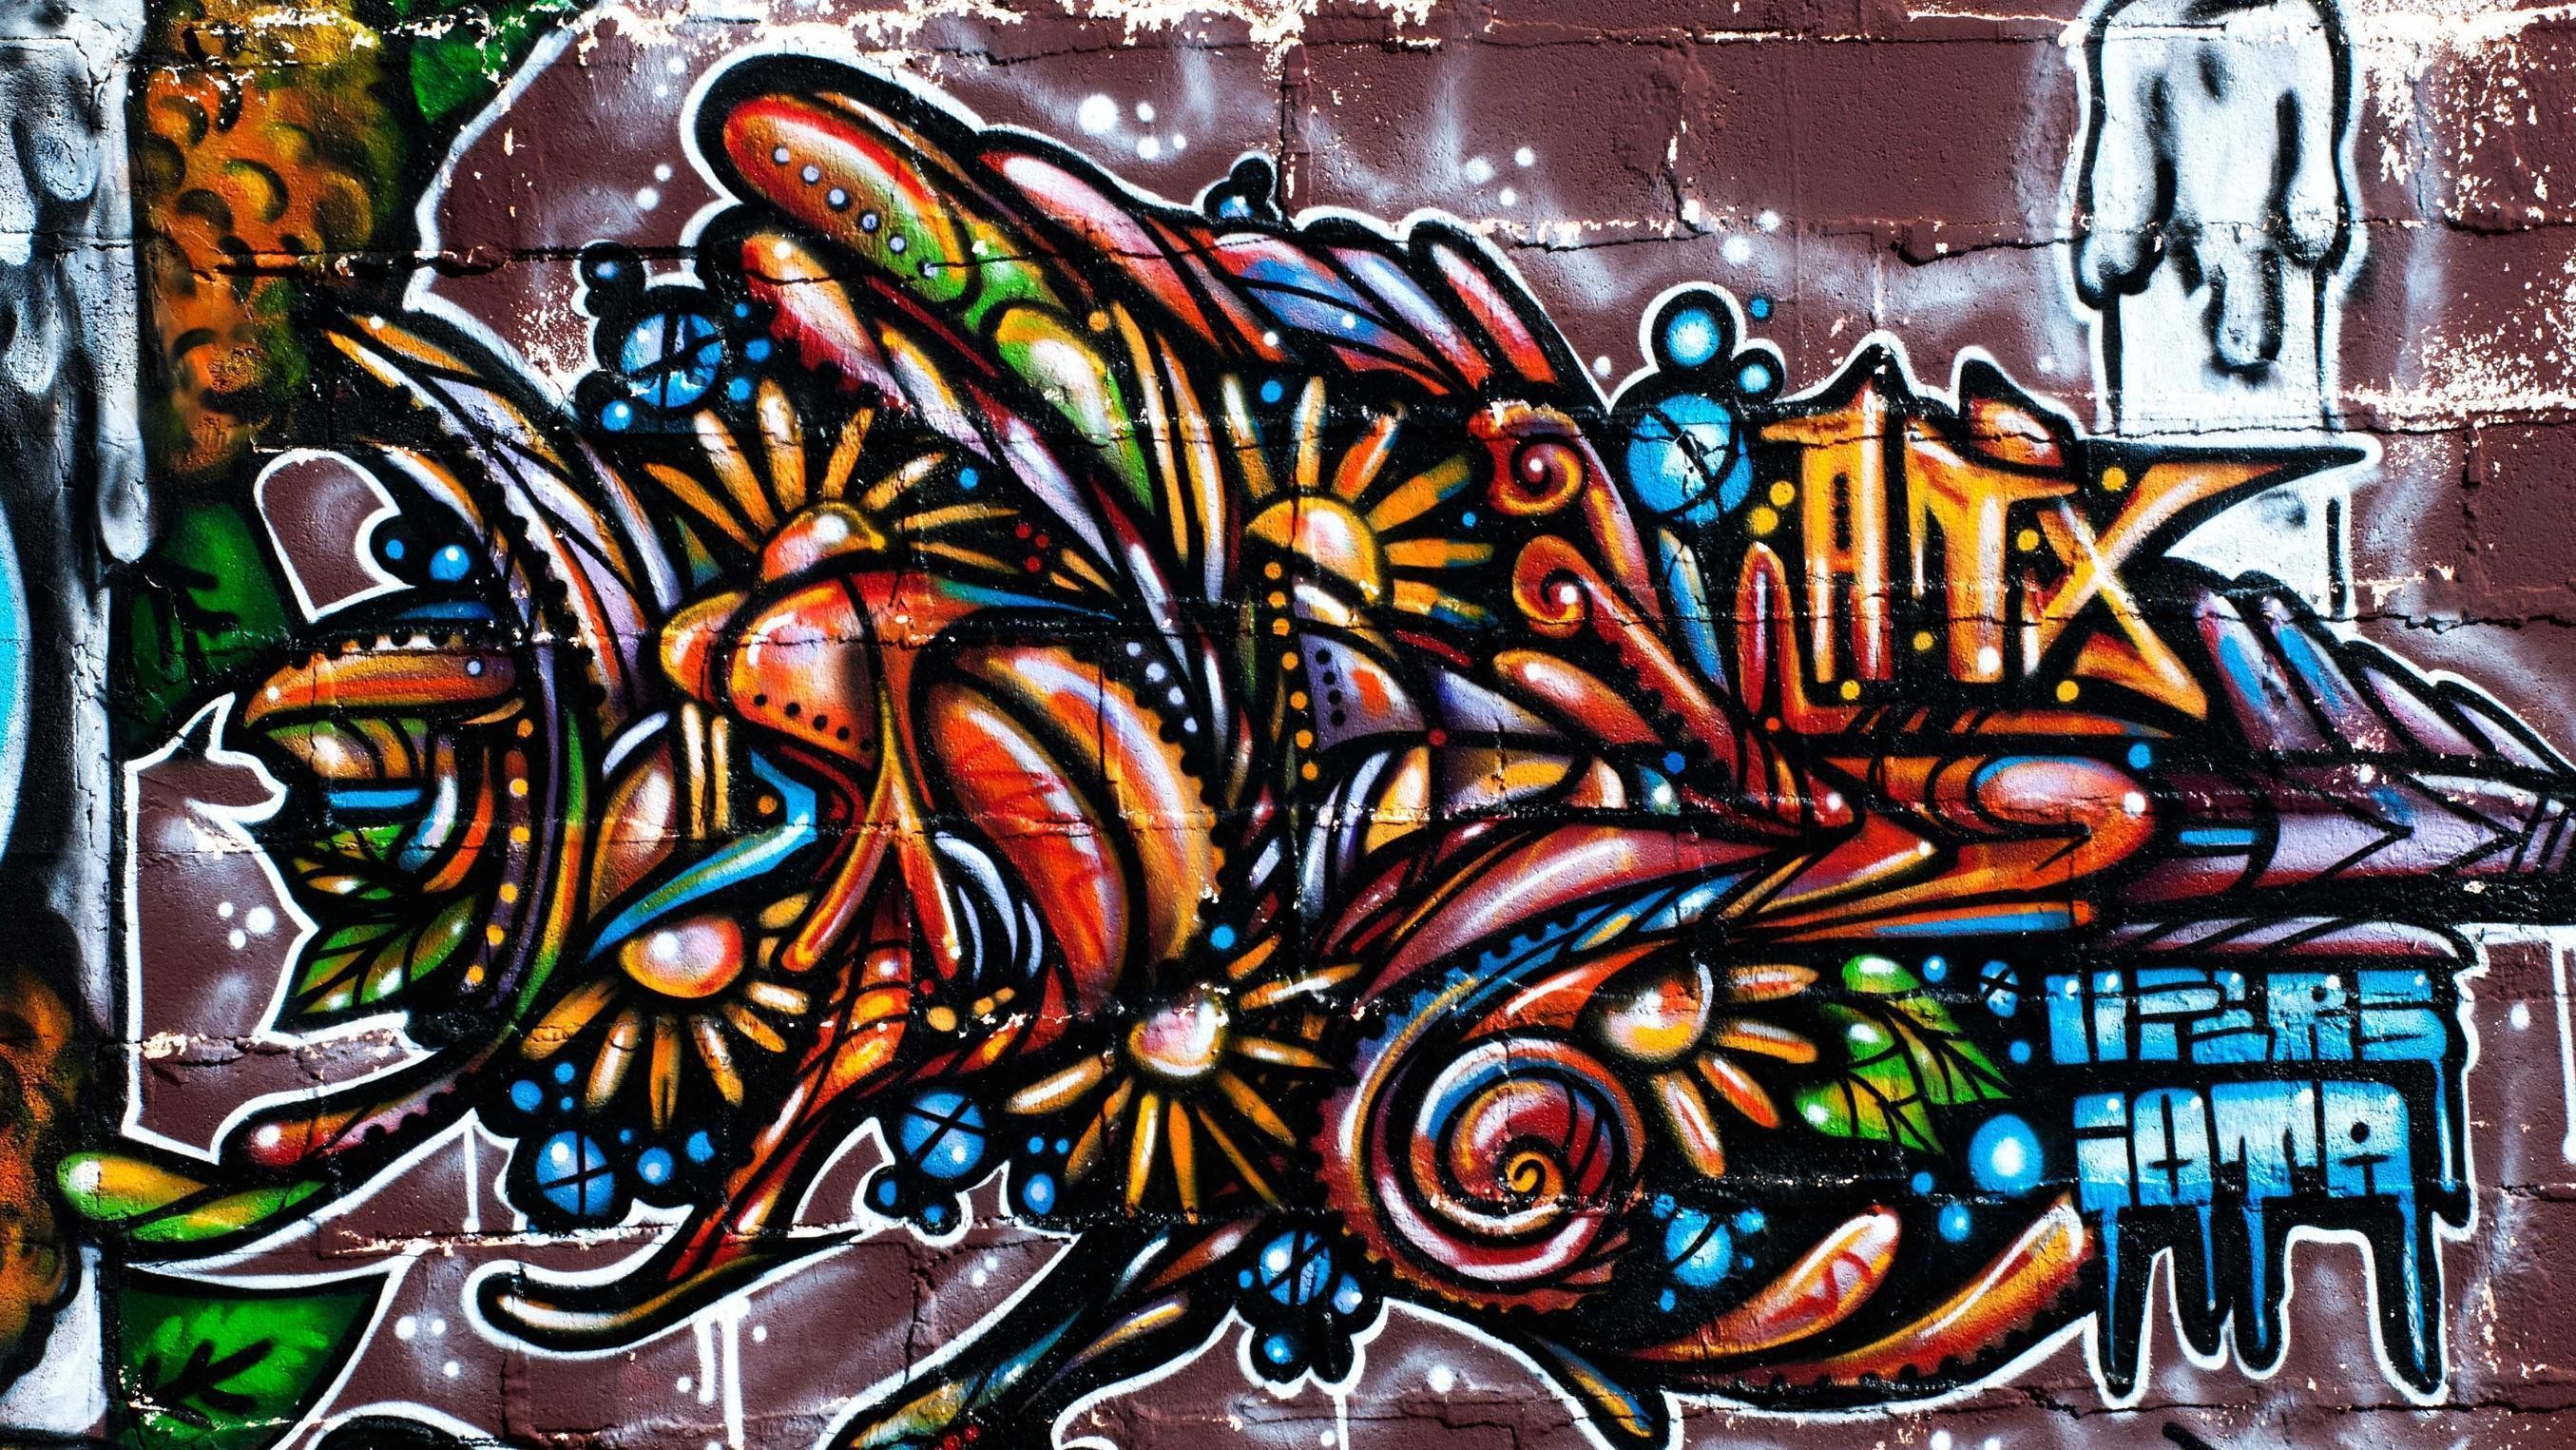 2710x1525 Cartoon Graffiti Wallpapers - WallpaperSafari